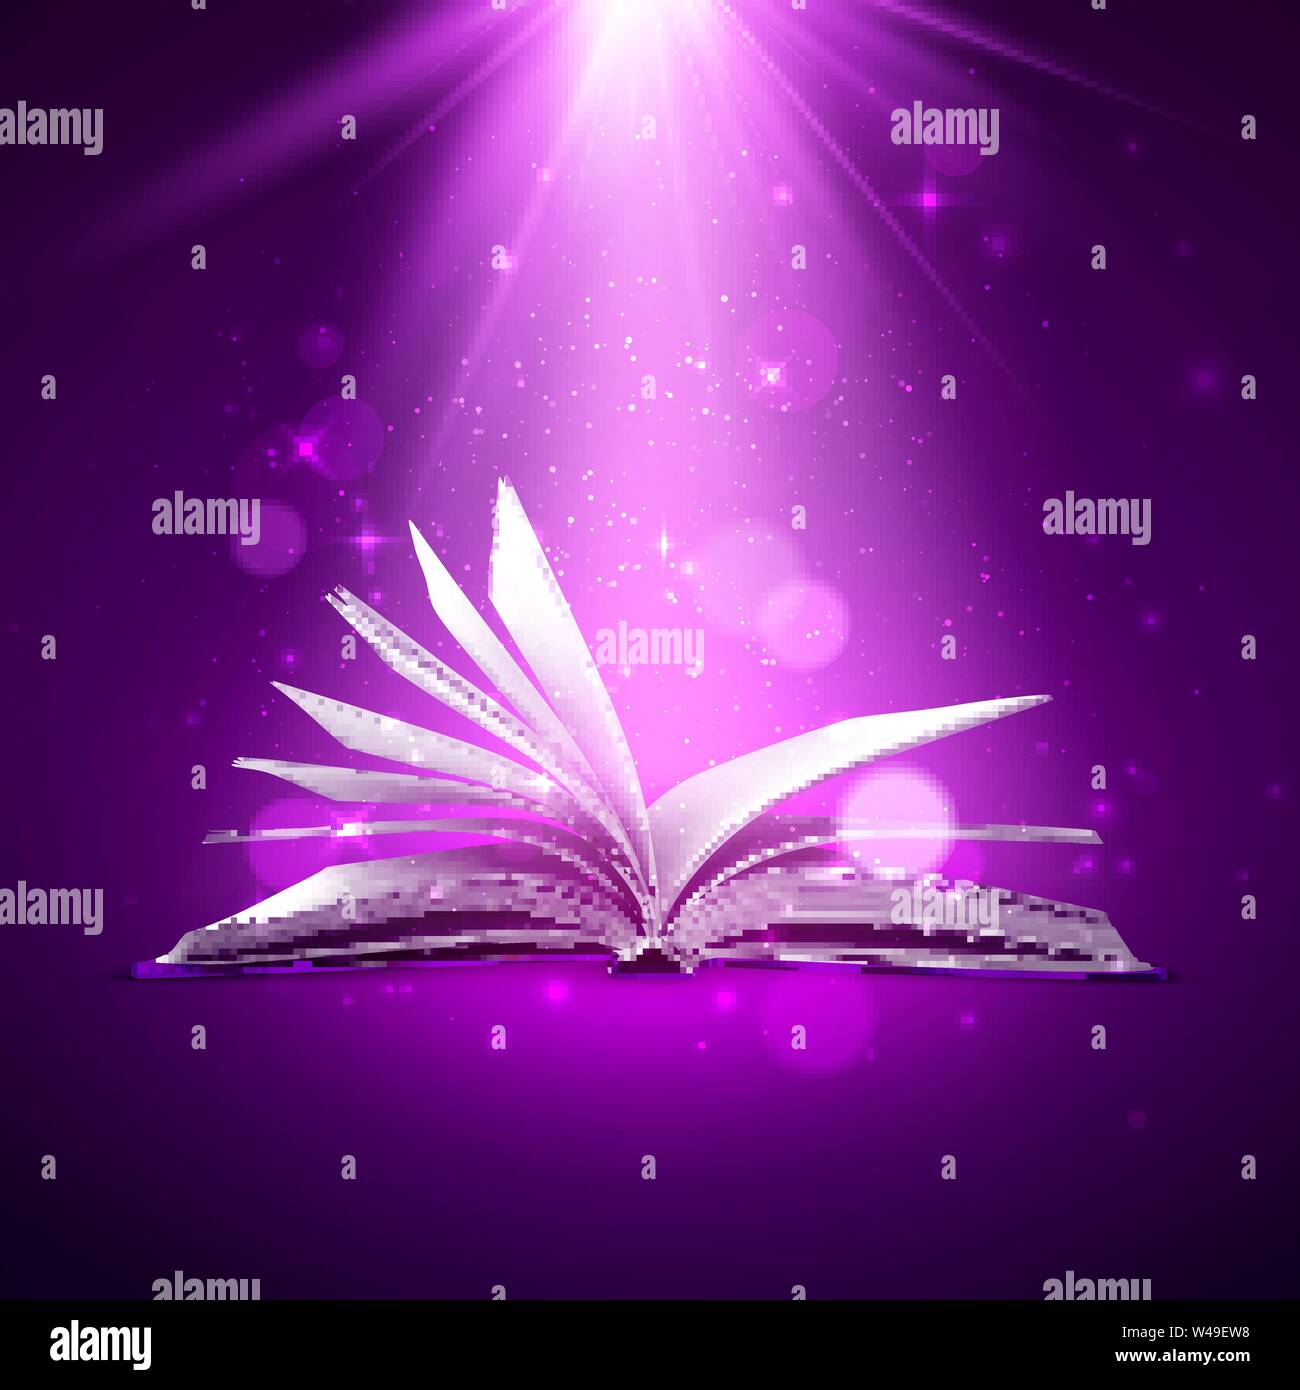 Geheimnis Buch öffnen. Fantasy Buch mit magischen Licht und funkelt. Vector Illustration Stock Vektor